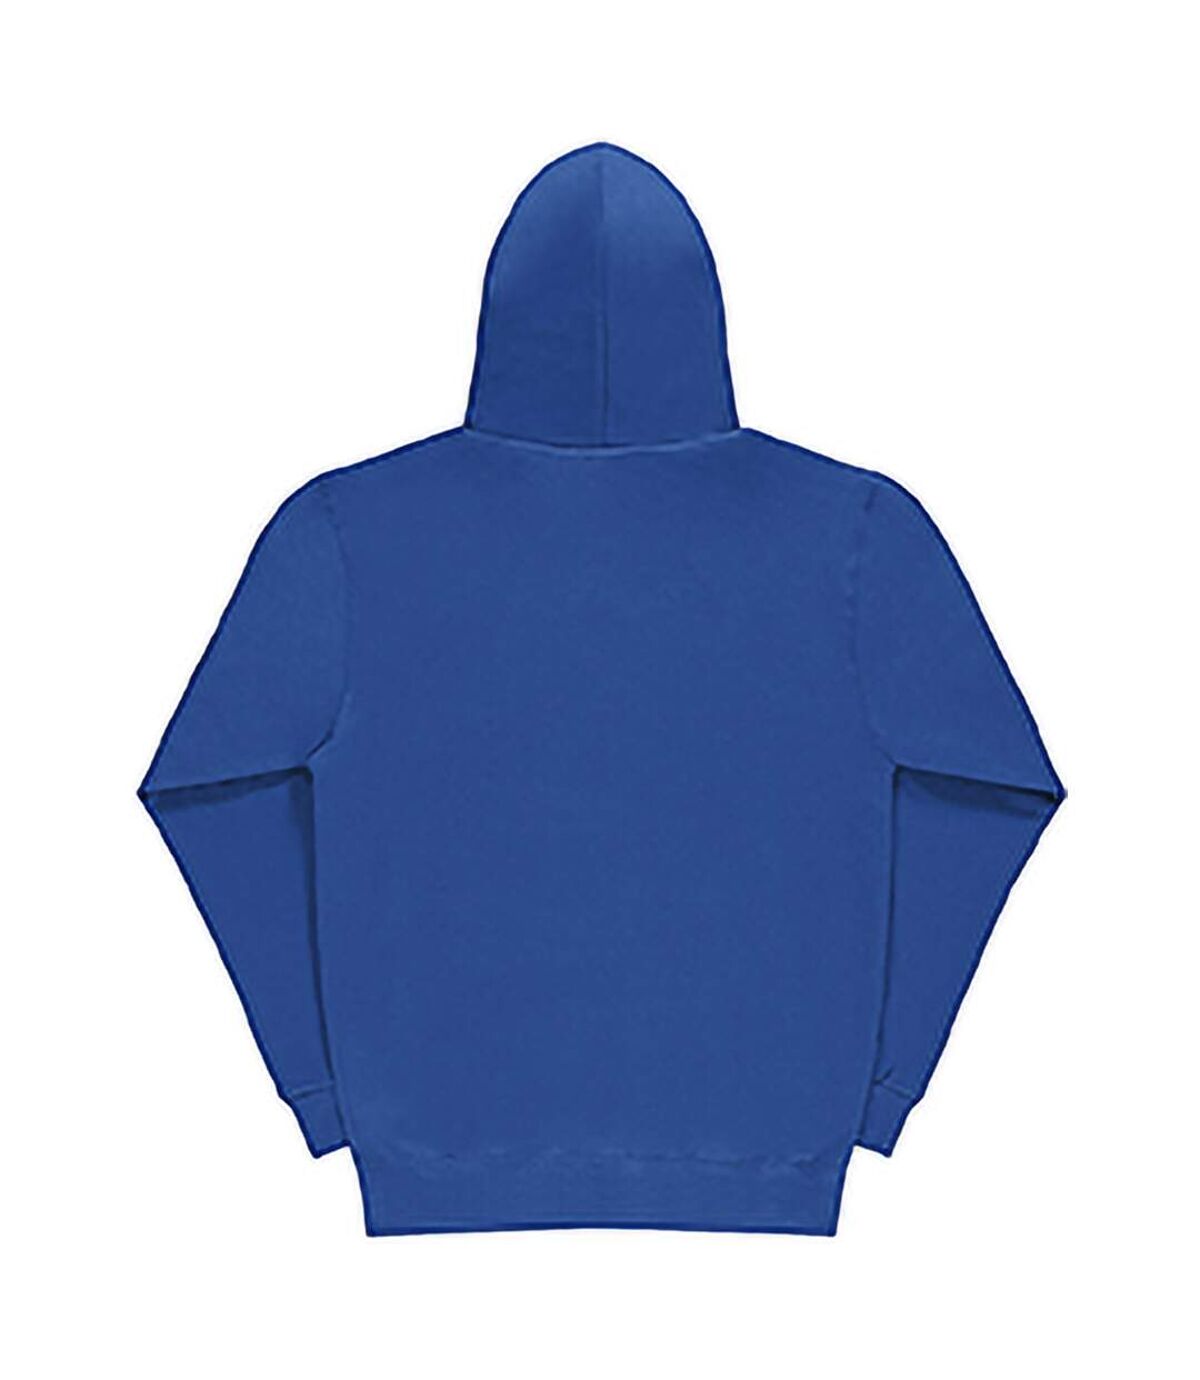 SG Mens Plain Hooded Sweatshirt Top / Hoodie / Sweatshirt (Royal) - UTBC1072